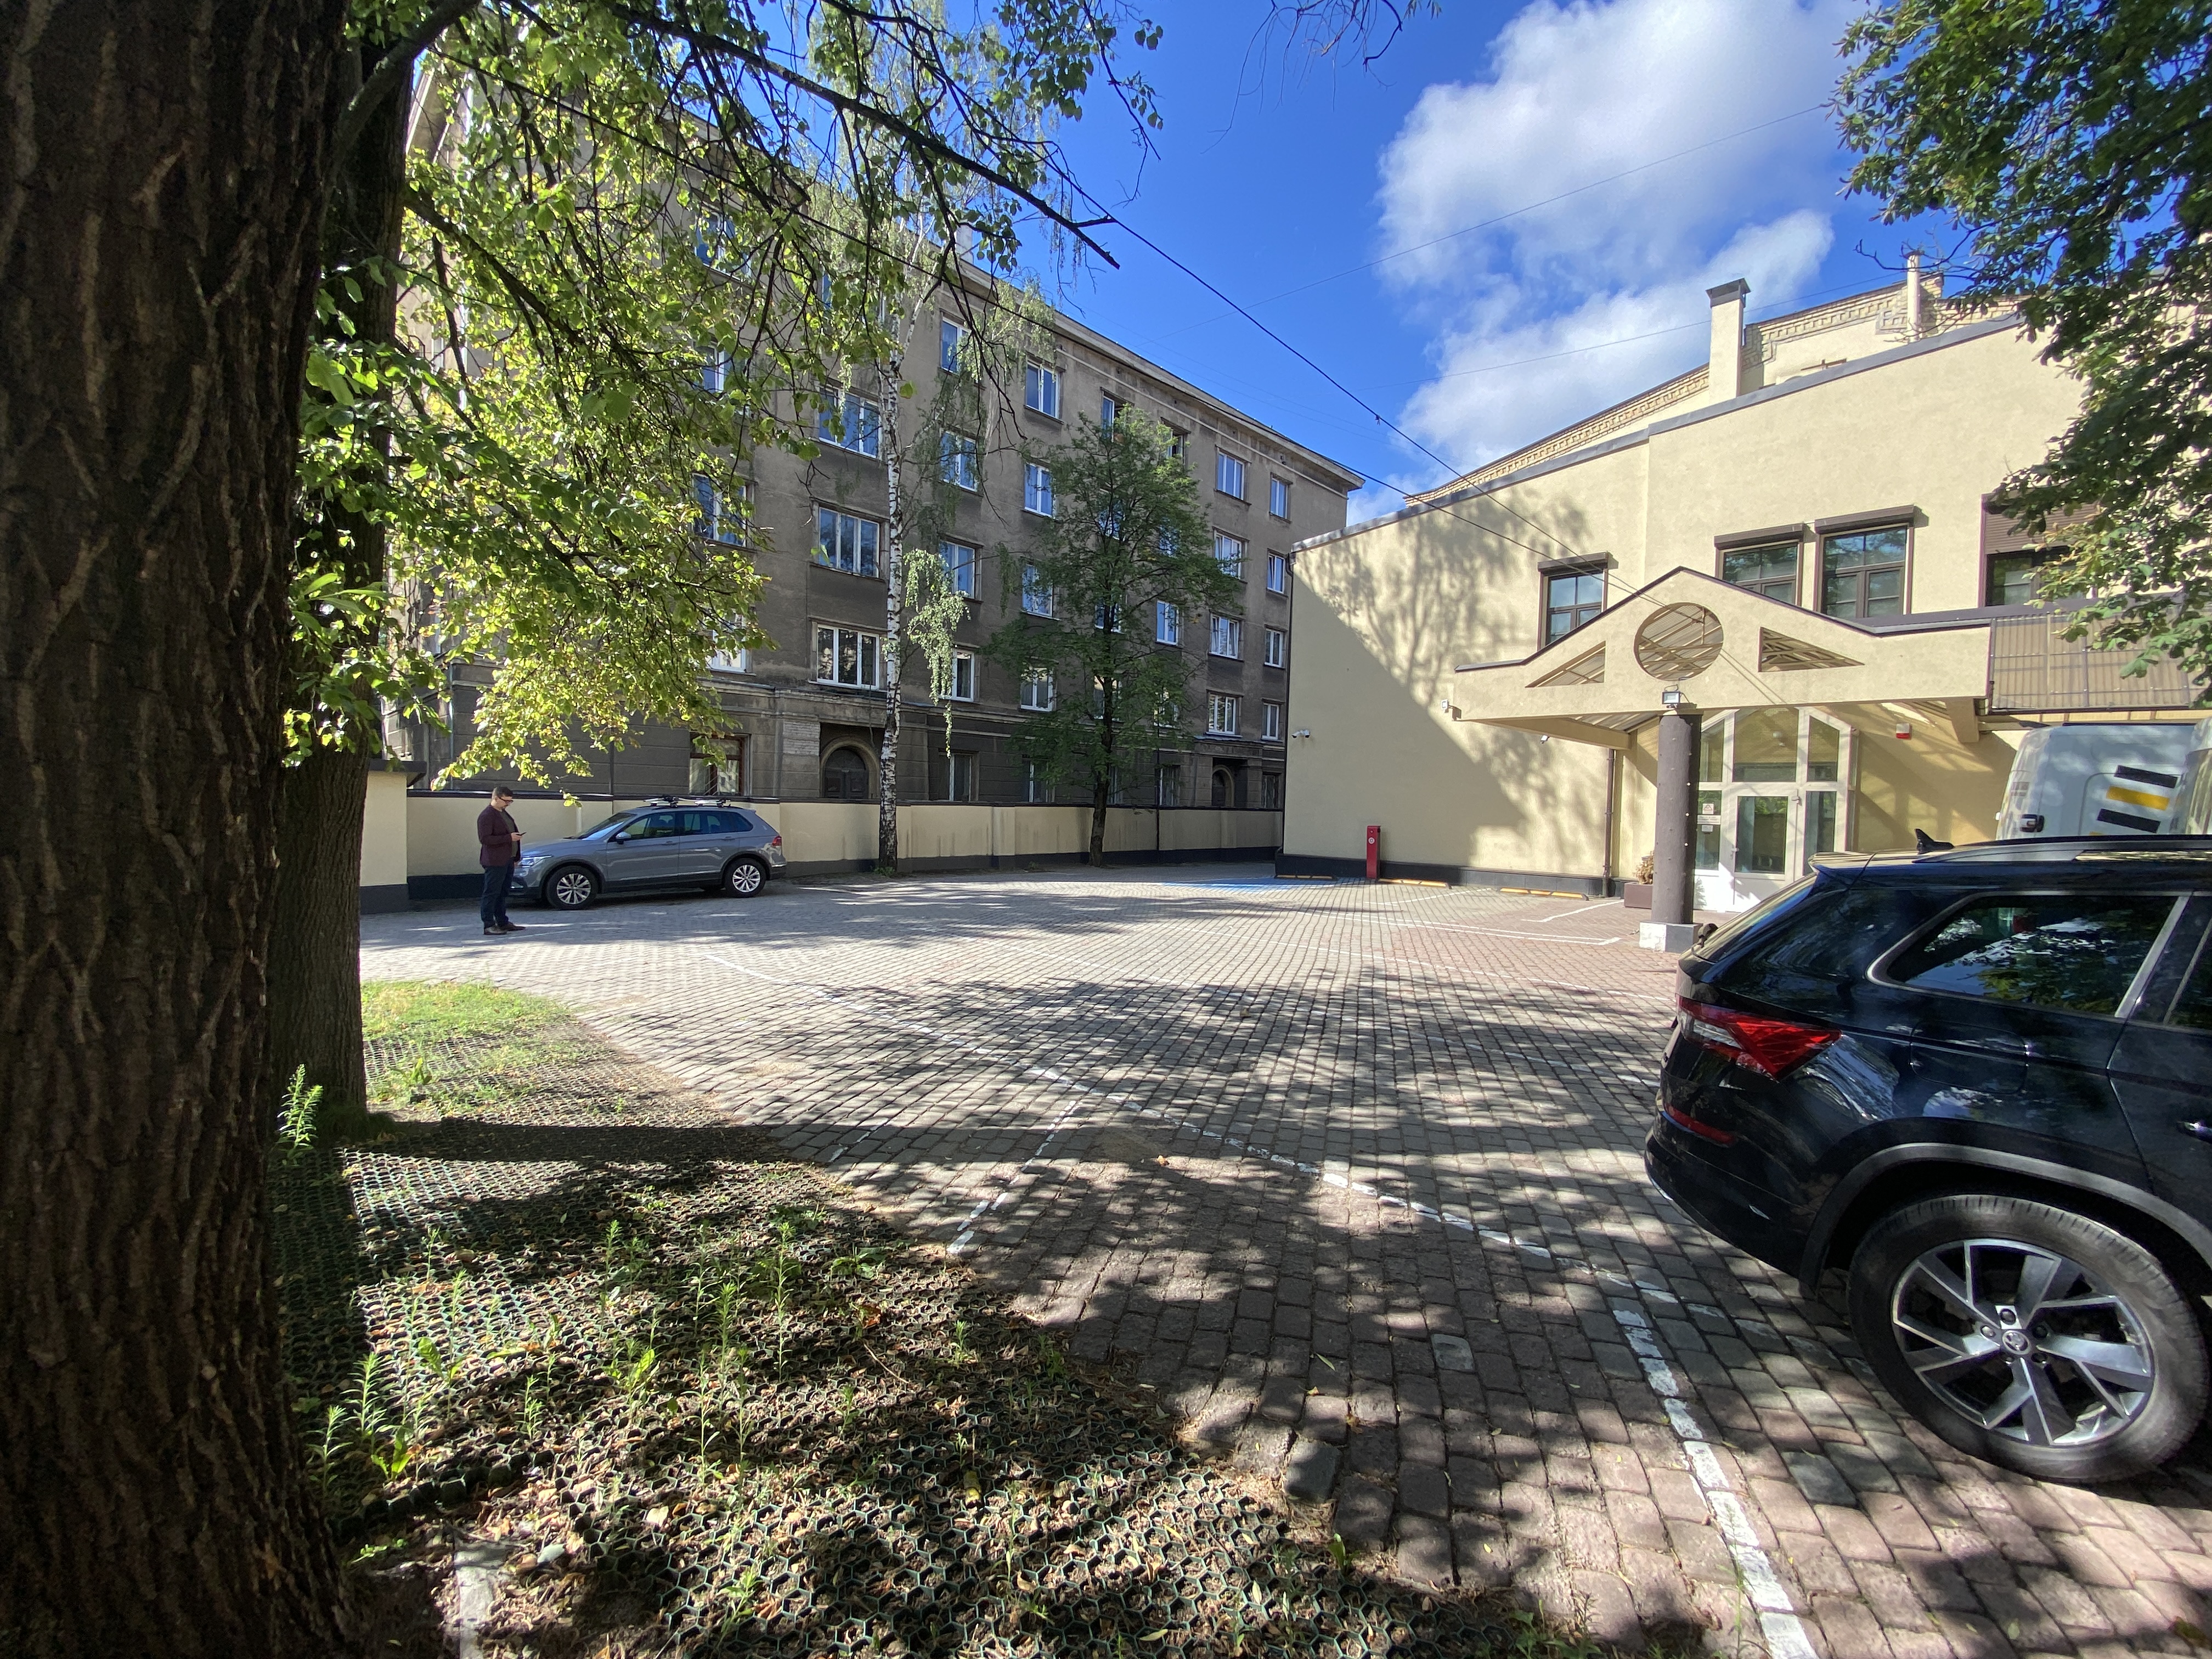 Office for rent, Brīvības street - Image 1